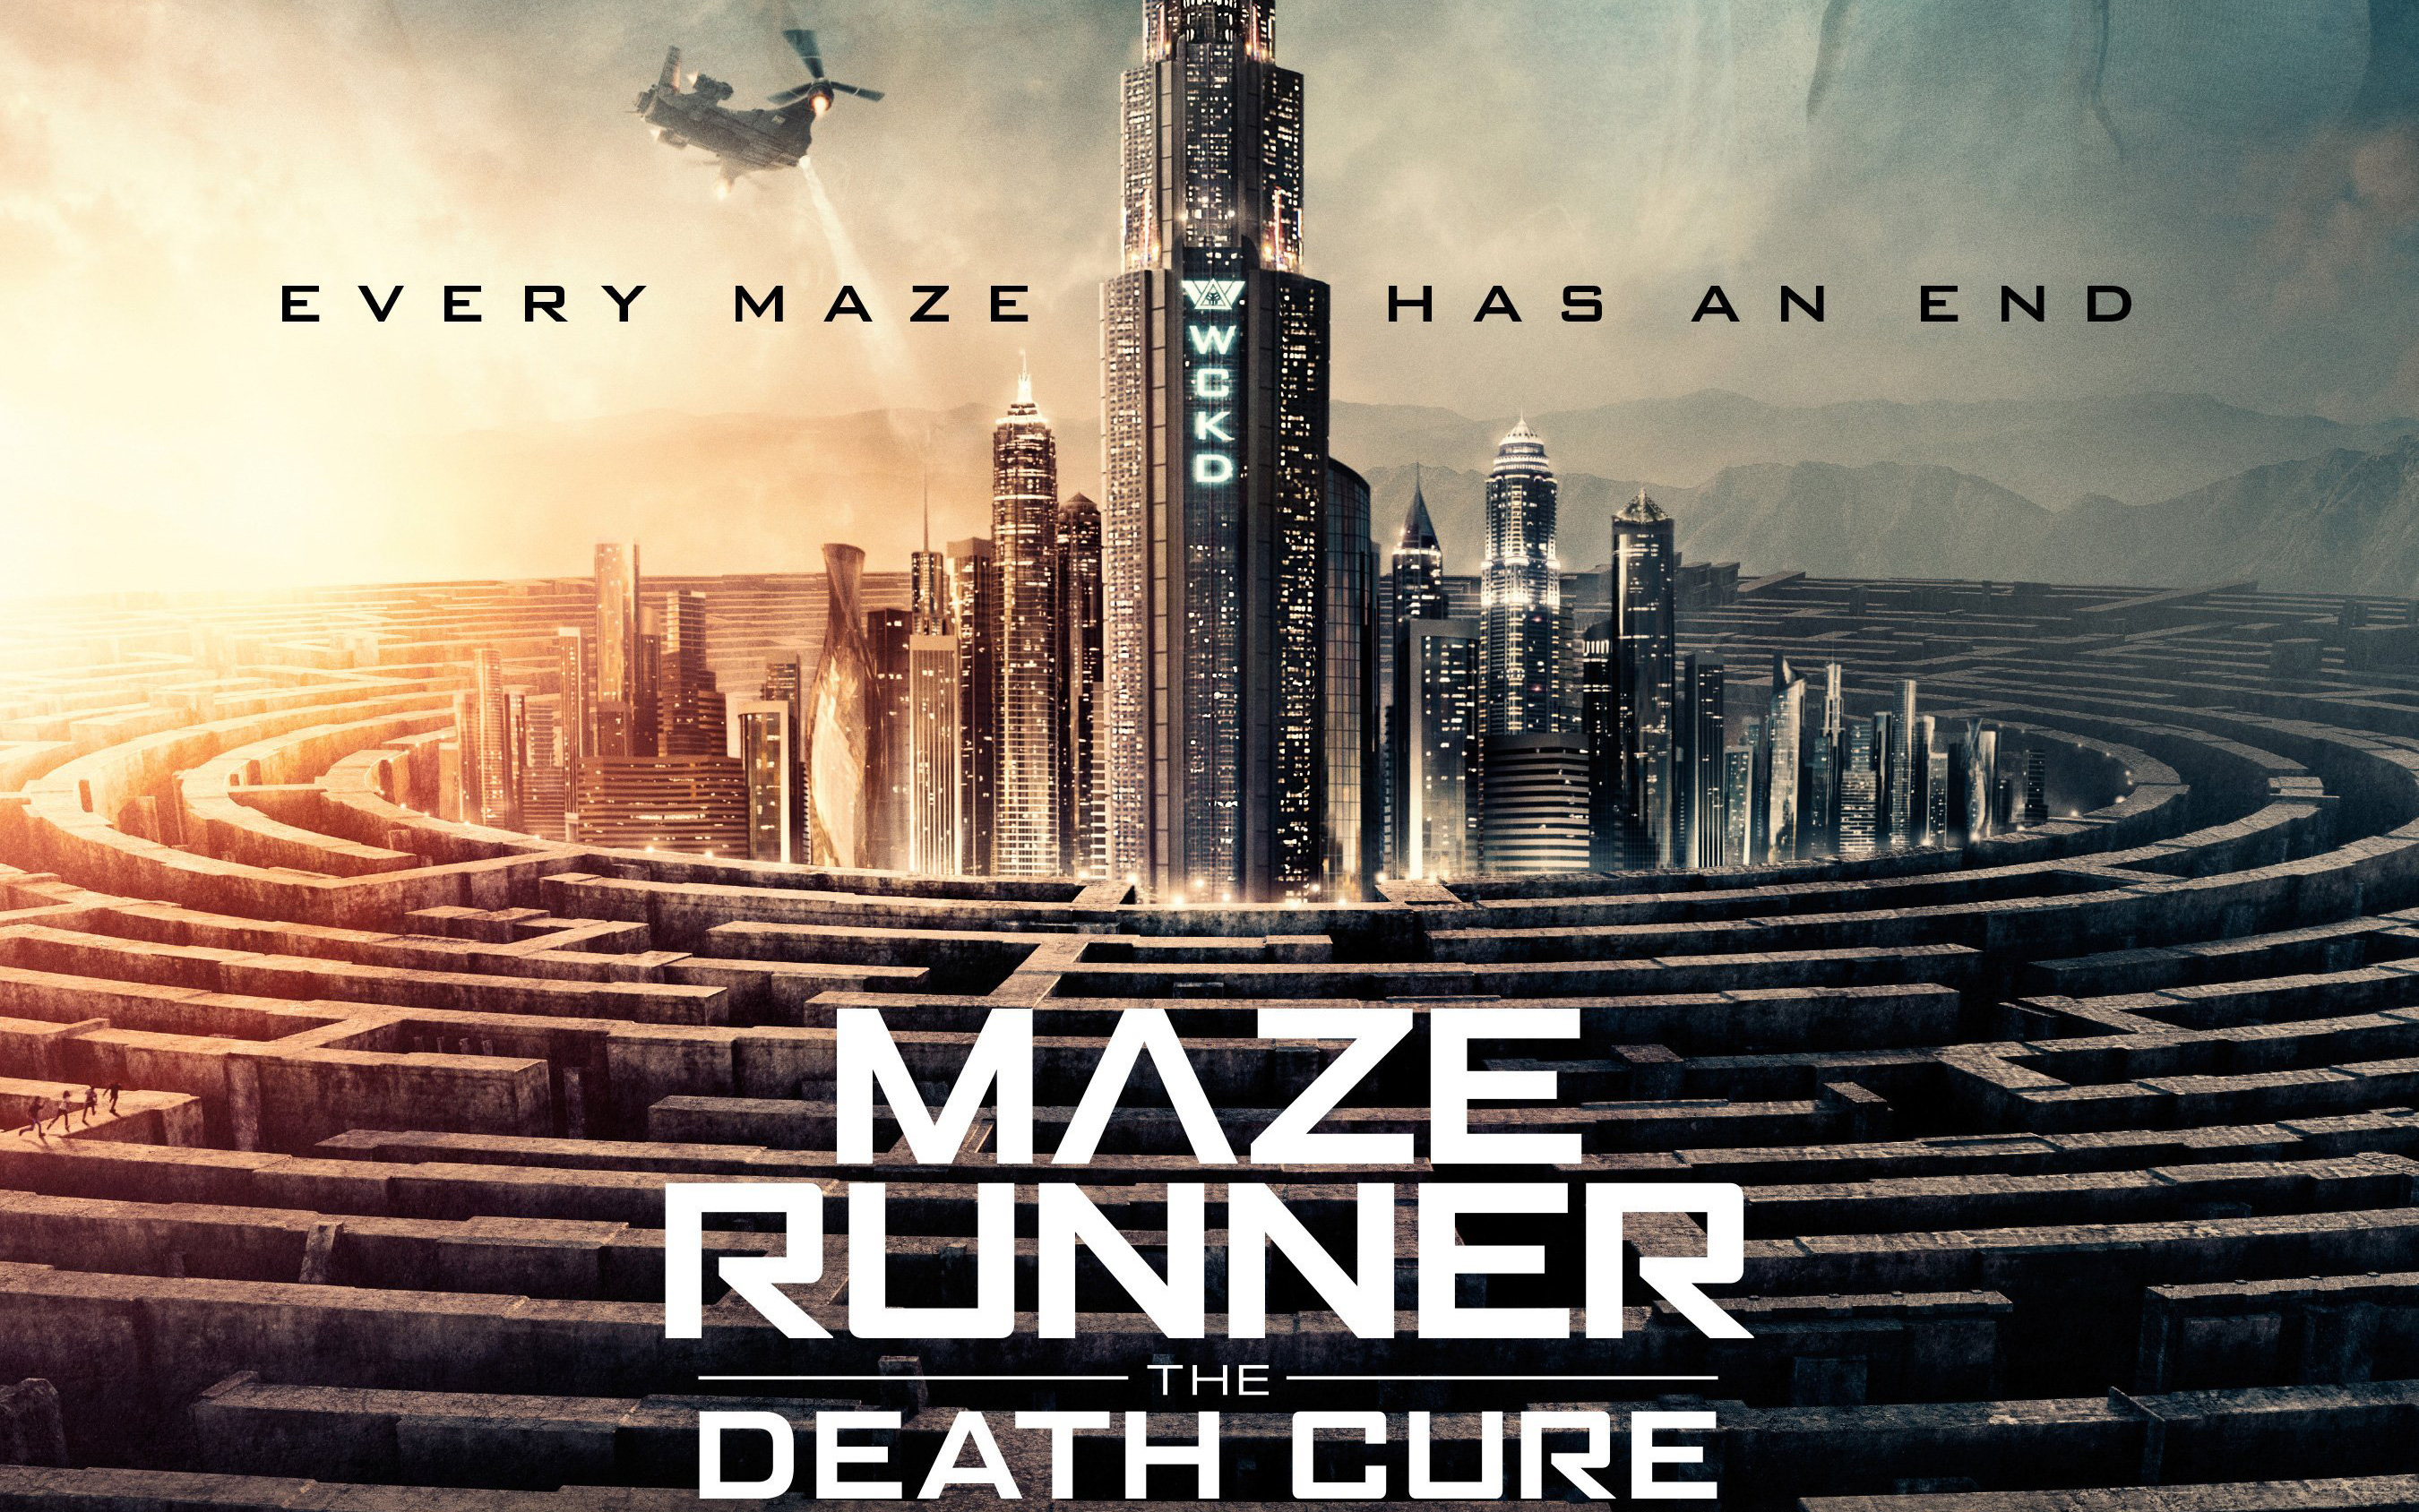 Maze Runner The Death Cure 2018868668982 - Maze Runner The Death Cure 2018 - The, Runner, Rey, Maze, Death, Cure, 2018